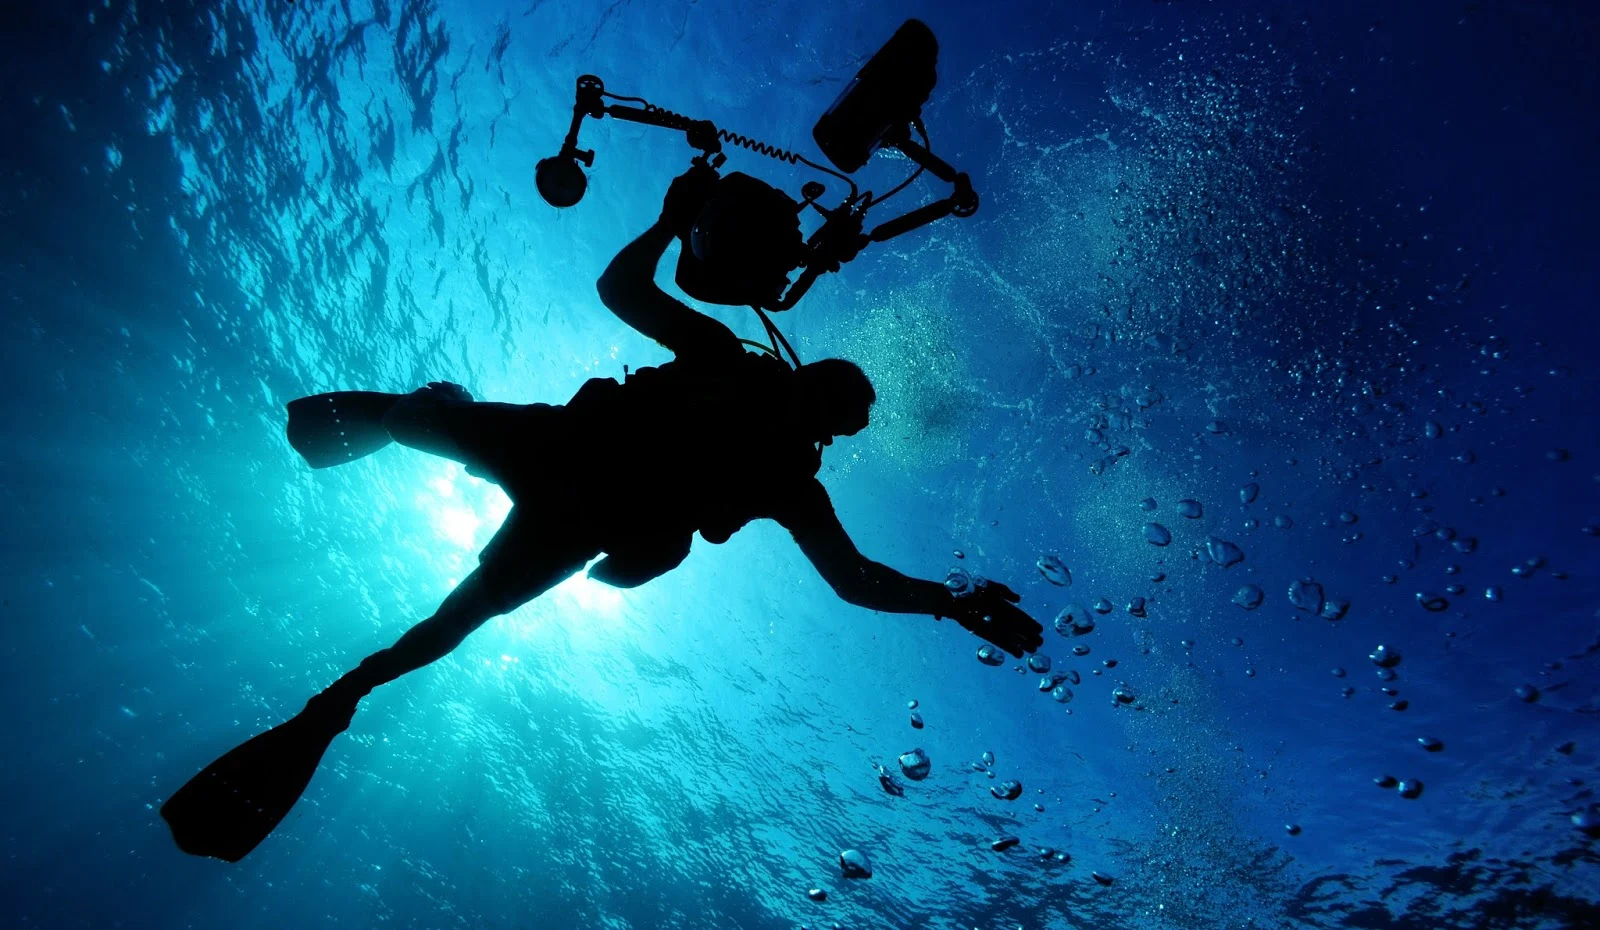 沖繩-沖繩潛水-沖繩浮潛-青之洞窟-真榮田岬-推薦-潛點-Okinawa-scuba-diving-snorkeling